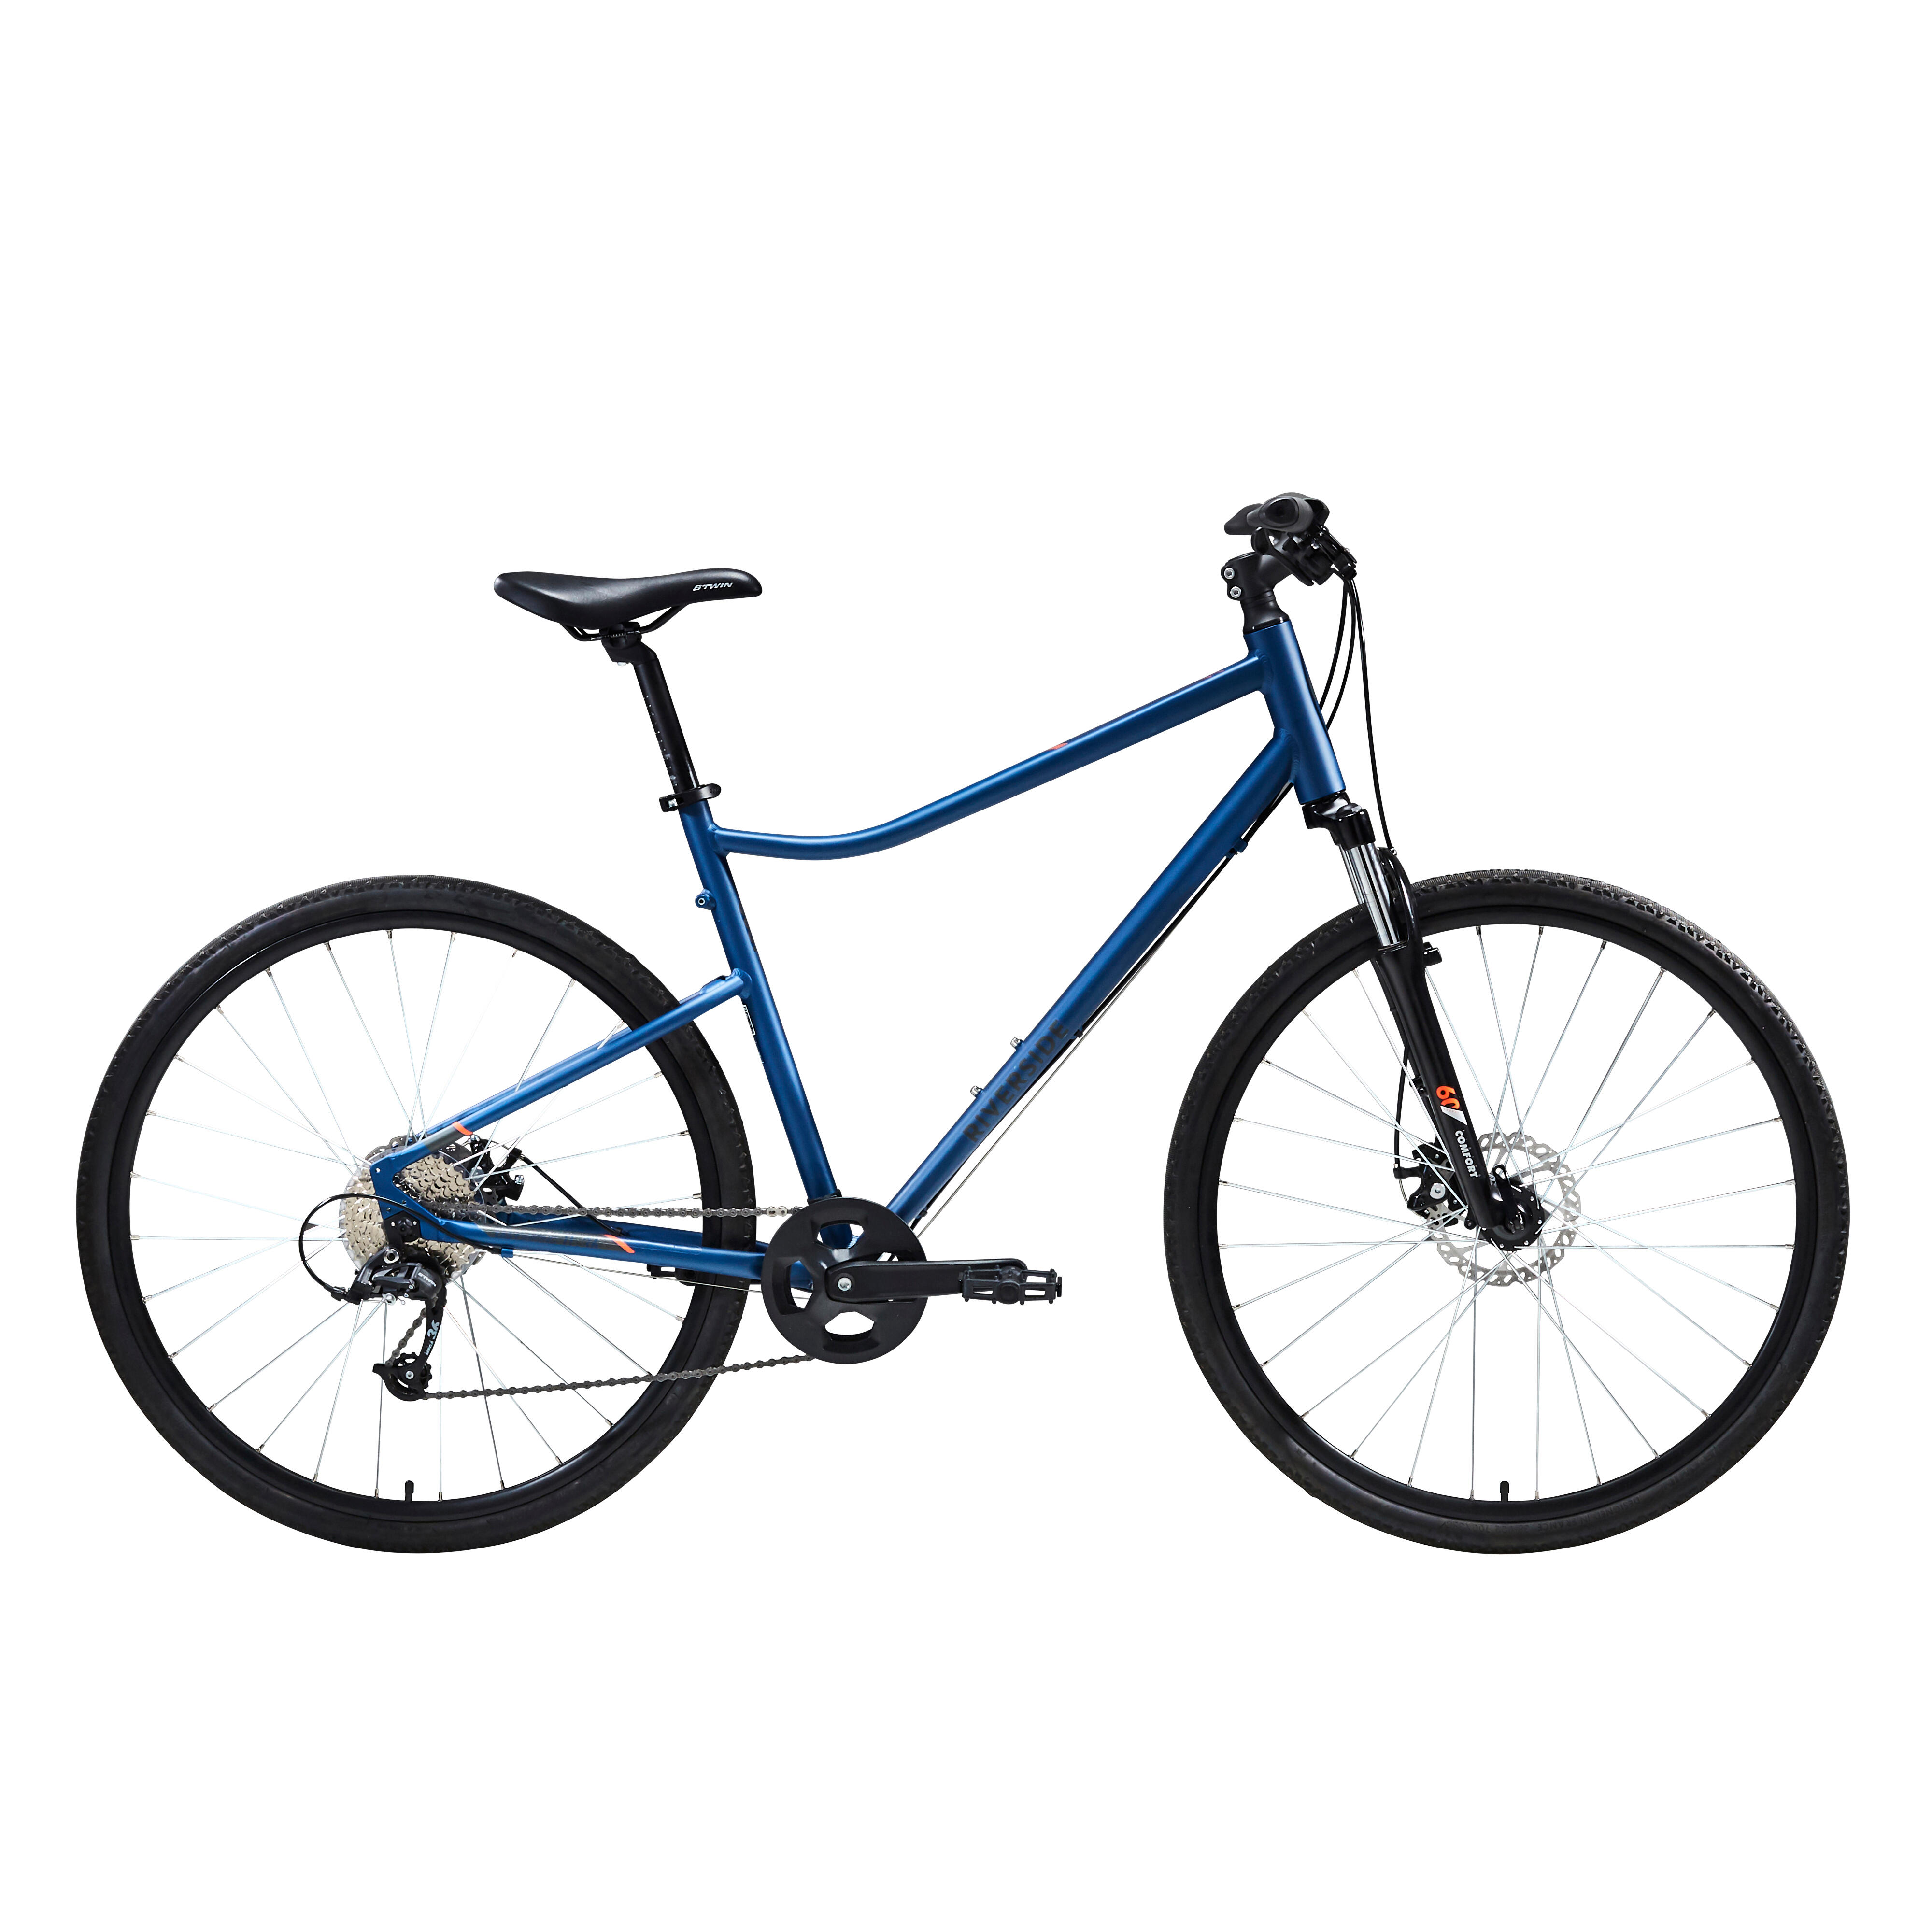 Bicicletă Polivalentă Riverside 500 Albastru decathlon.ro imagine 2022